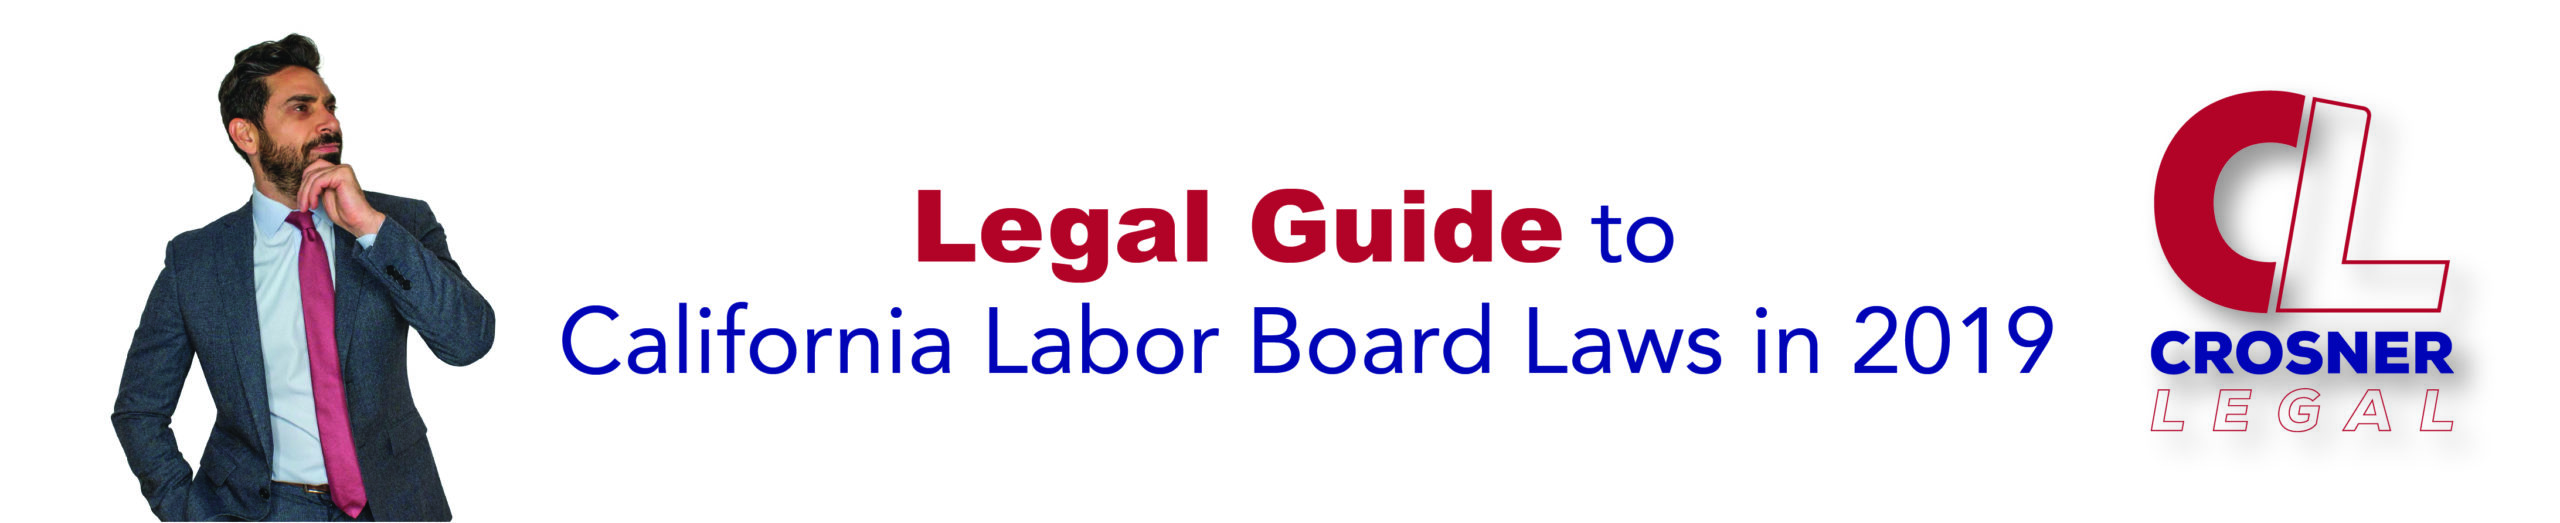 Legal Guide to California Labor Board Laws in 2019